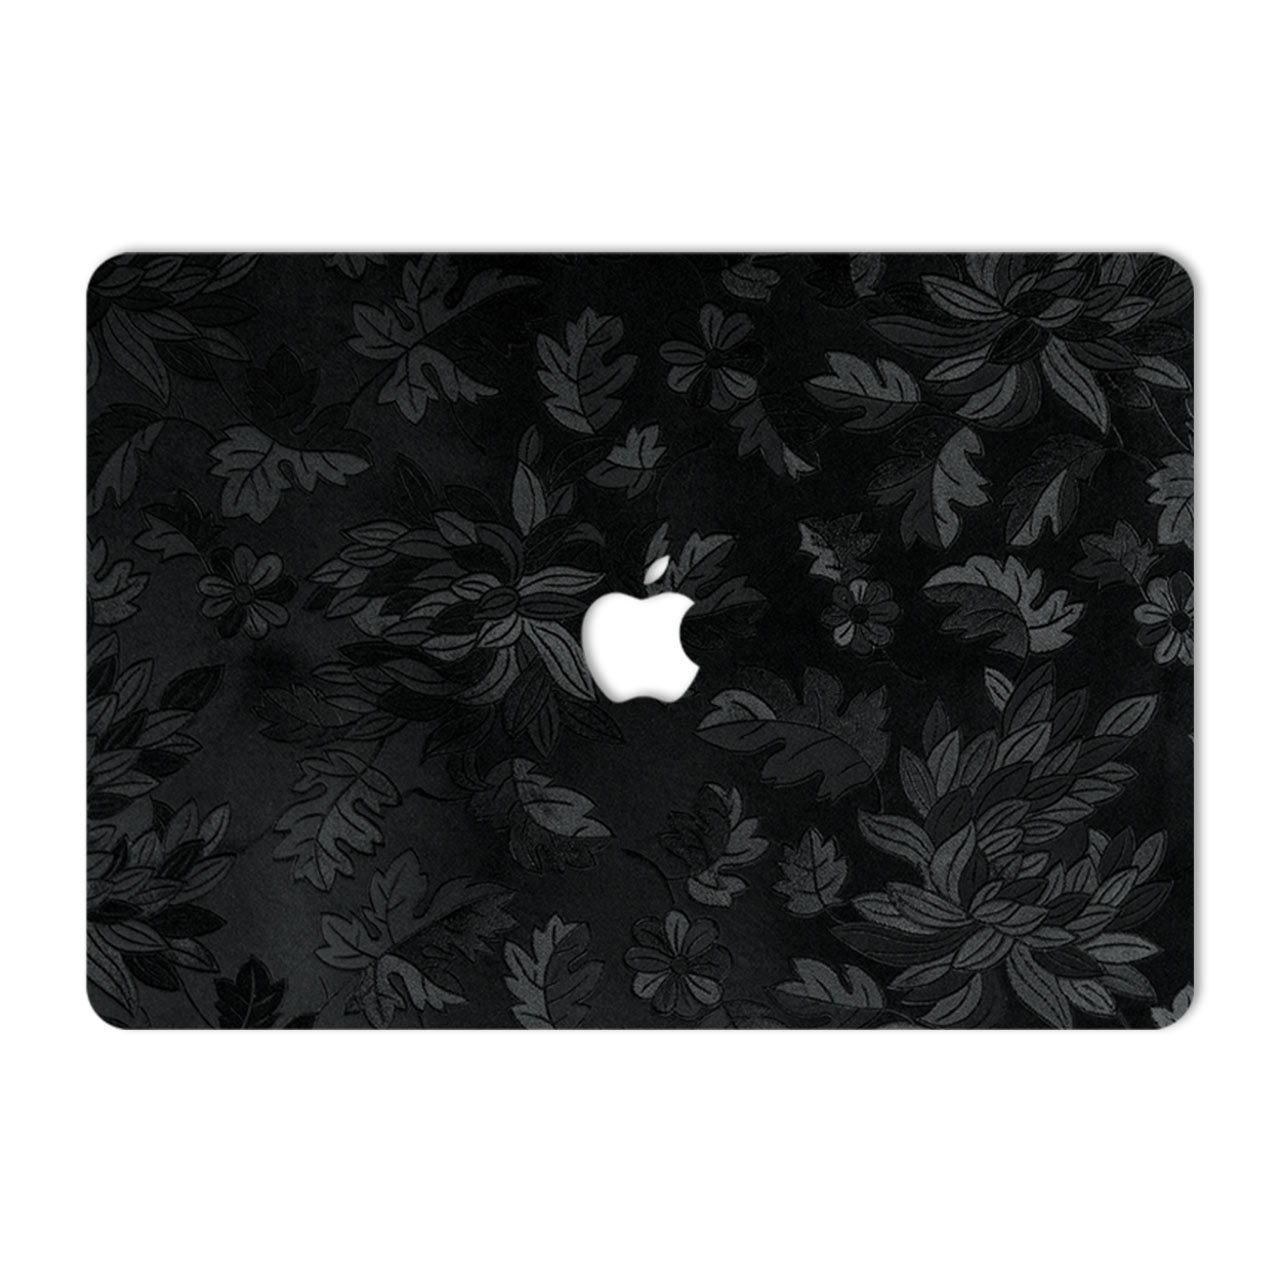 برچسب پوششی ماهوت مدل Black Wild-Flower مناسب برای لپ تاپ Macbook 12inch Retina